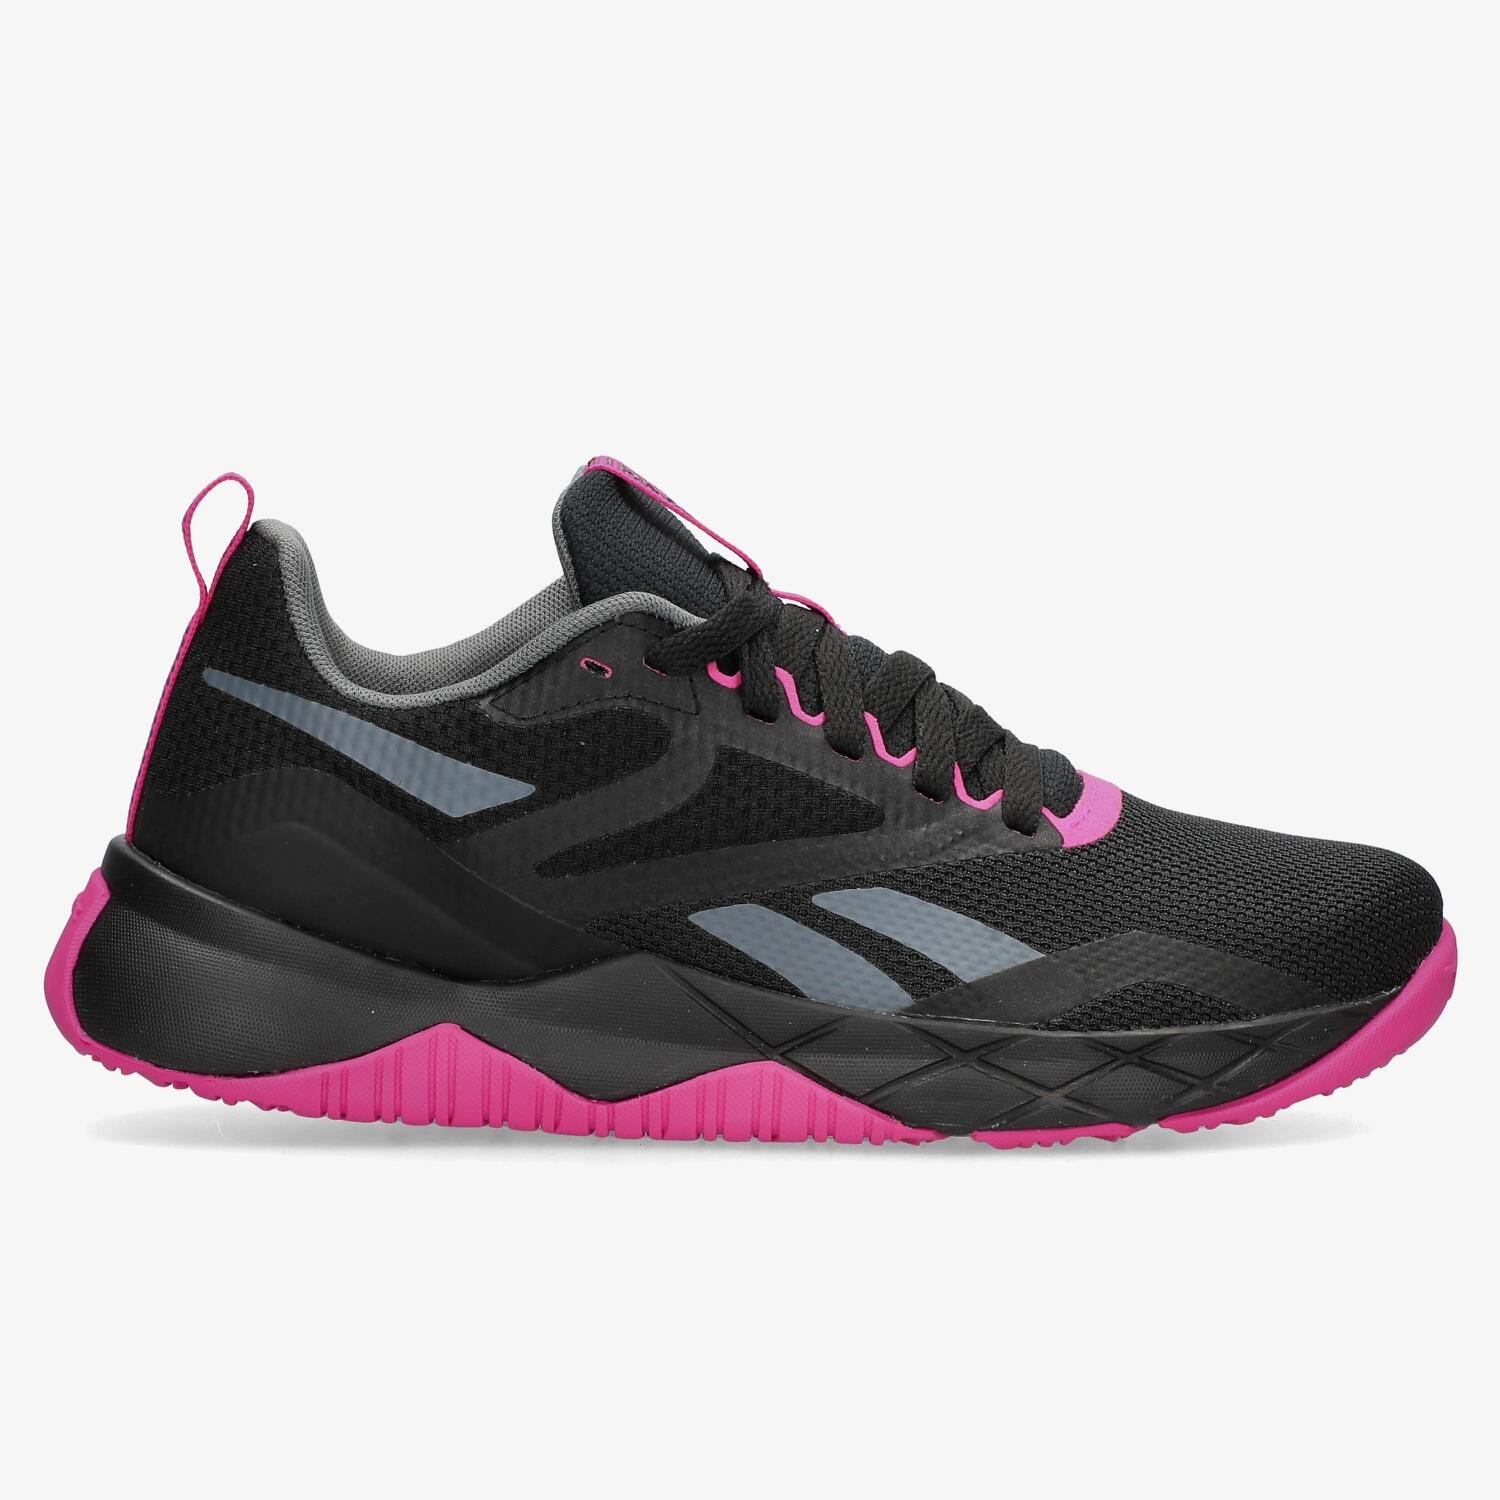 Zapatillas Running Reebok mujer - Ofertas para comprar online y